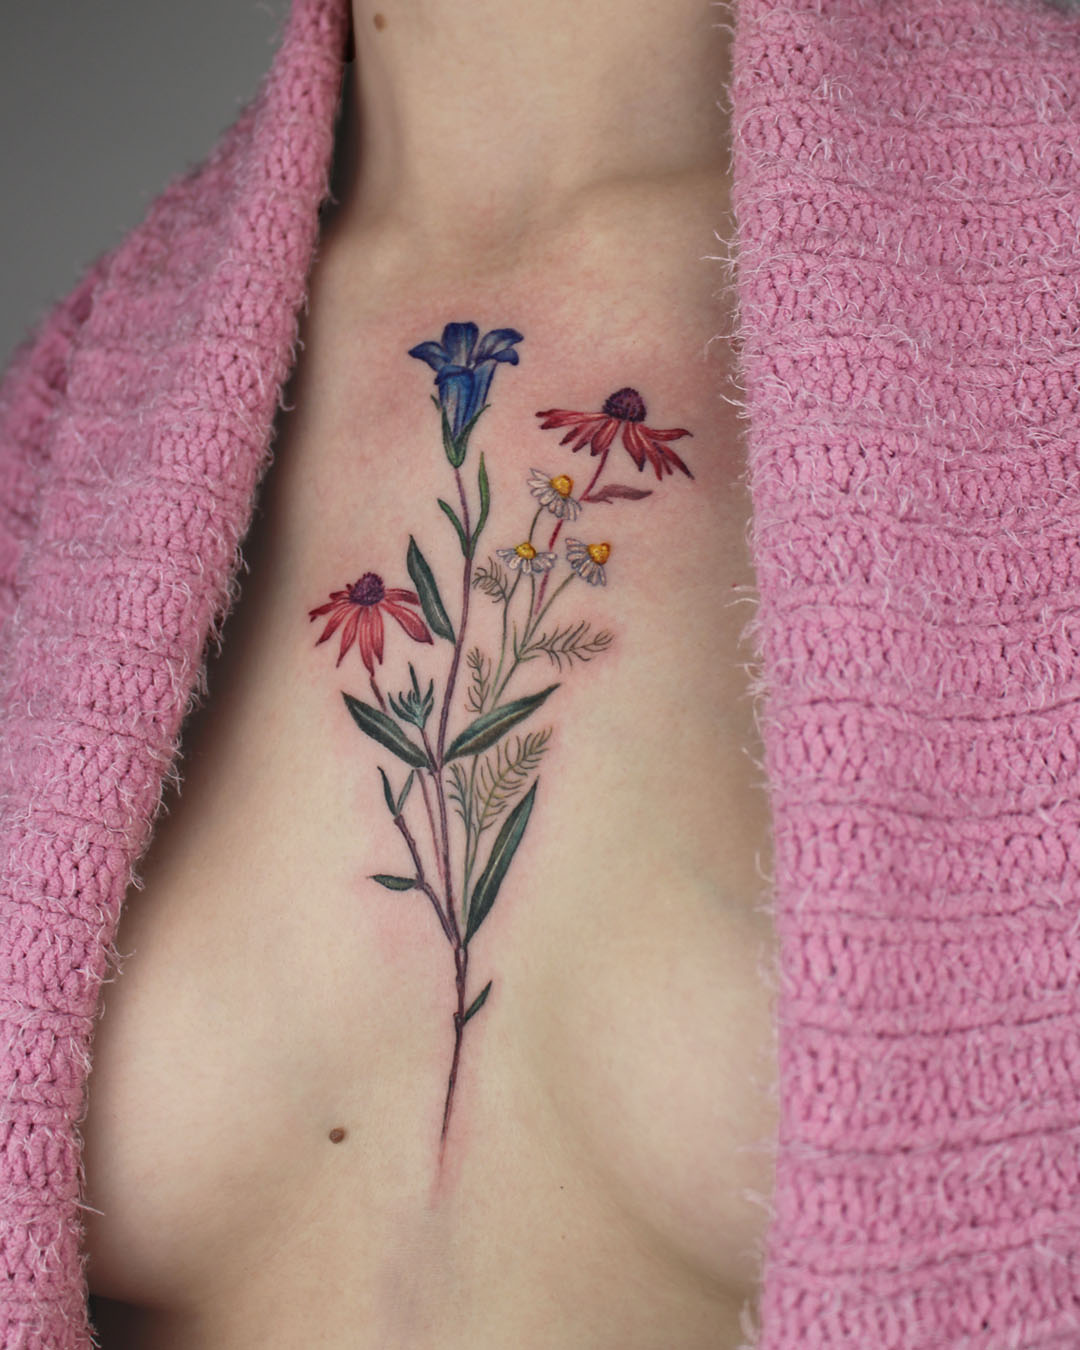 Sleeve done by Joe Tartarotti at GOOD TATTOO PARLOUR, Milano Italy : r/ tattoos